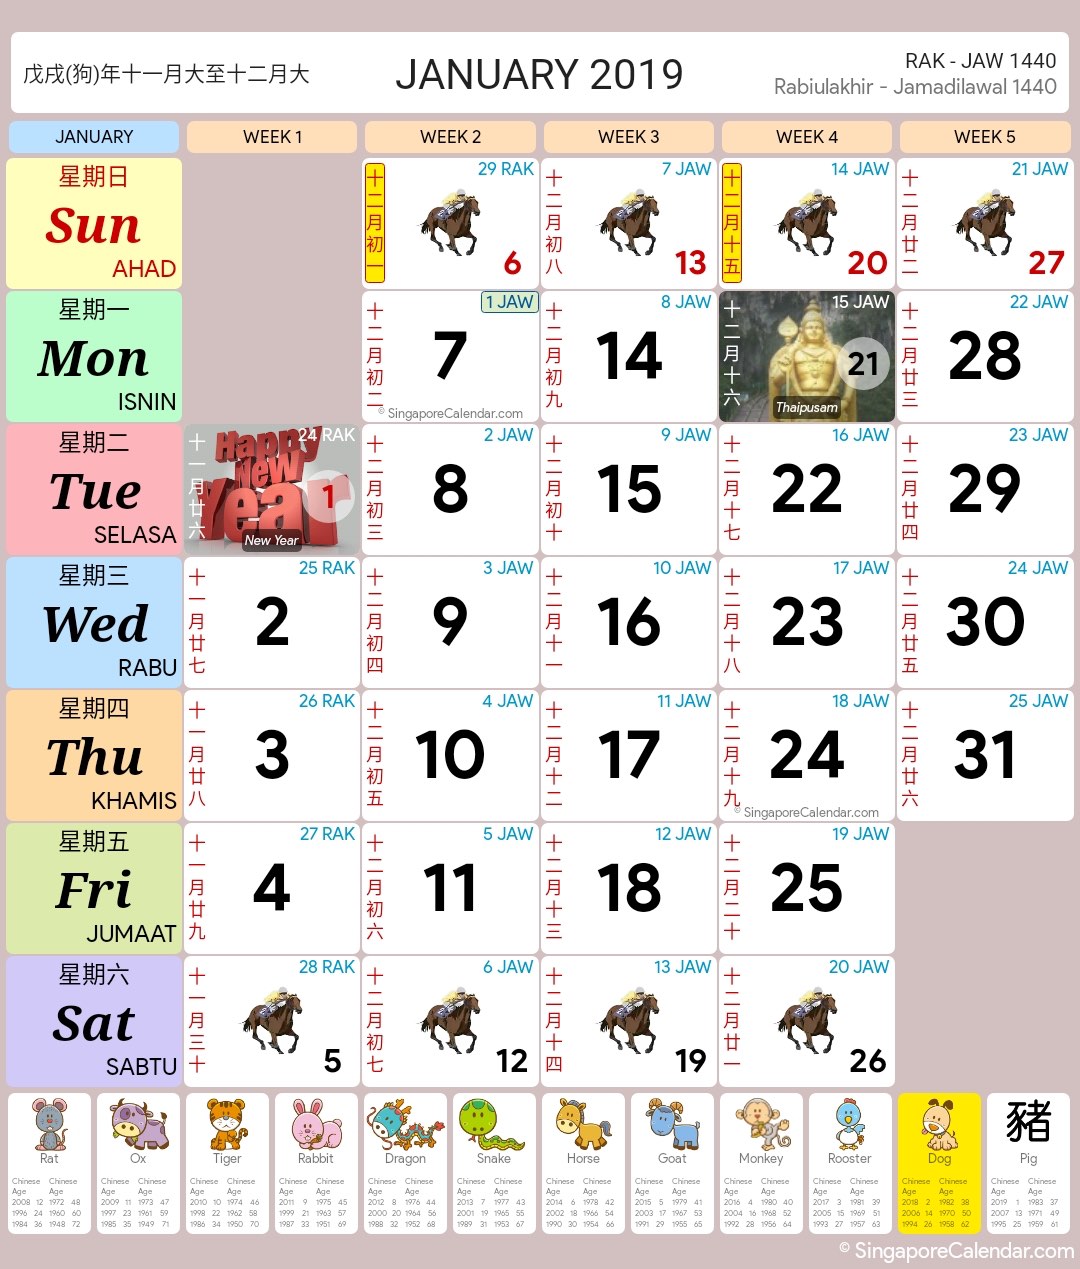 singapore-calendar-year-2019-singapore-calendar